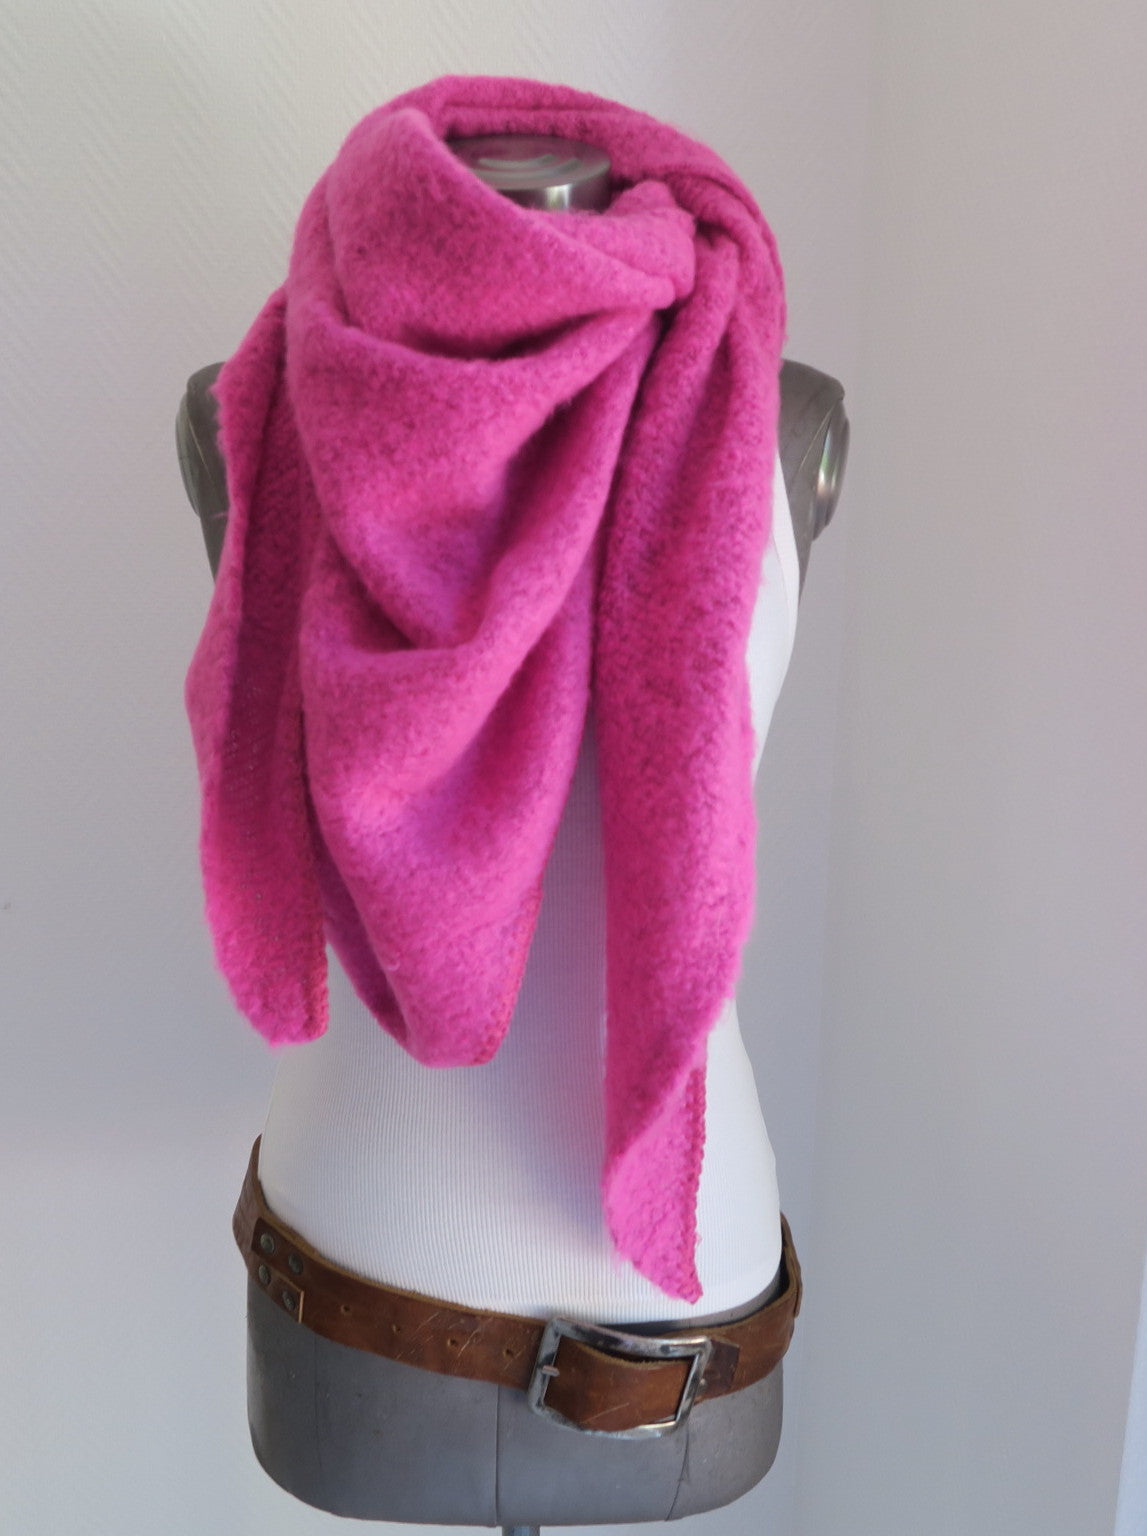 Wolle pink|secretofstyle Schal Damen Dreieckstuch Flausch